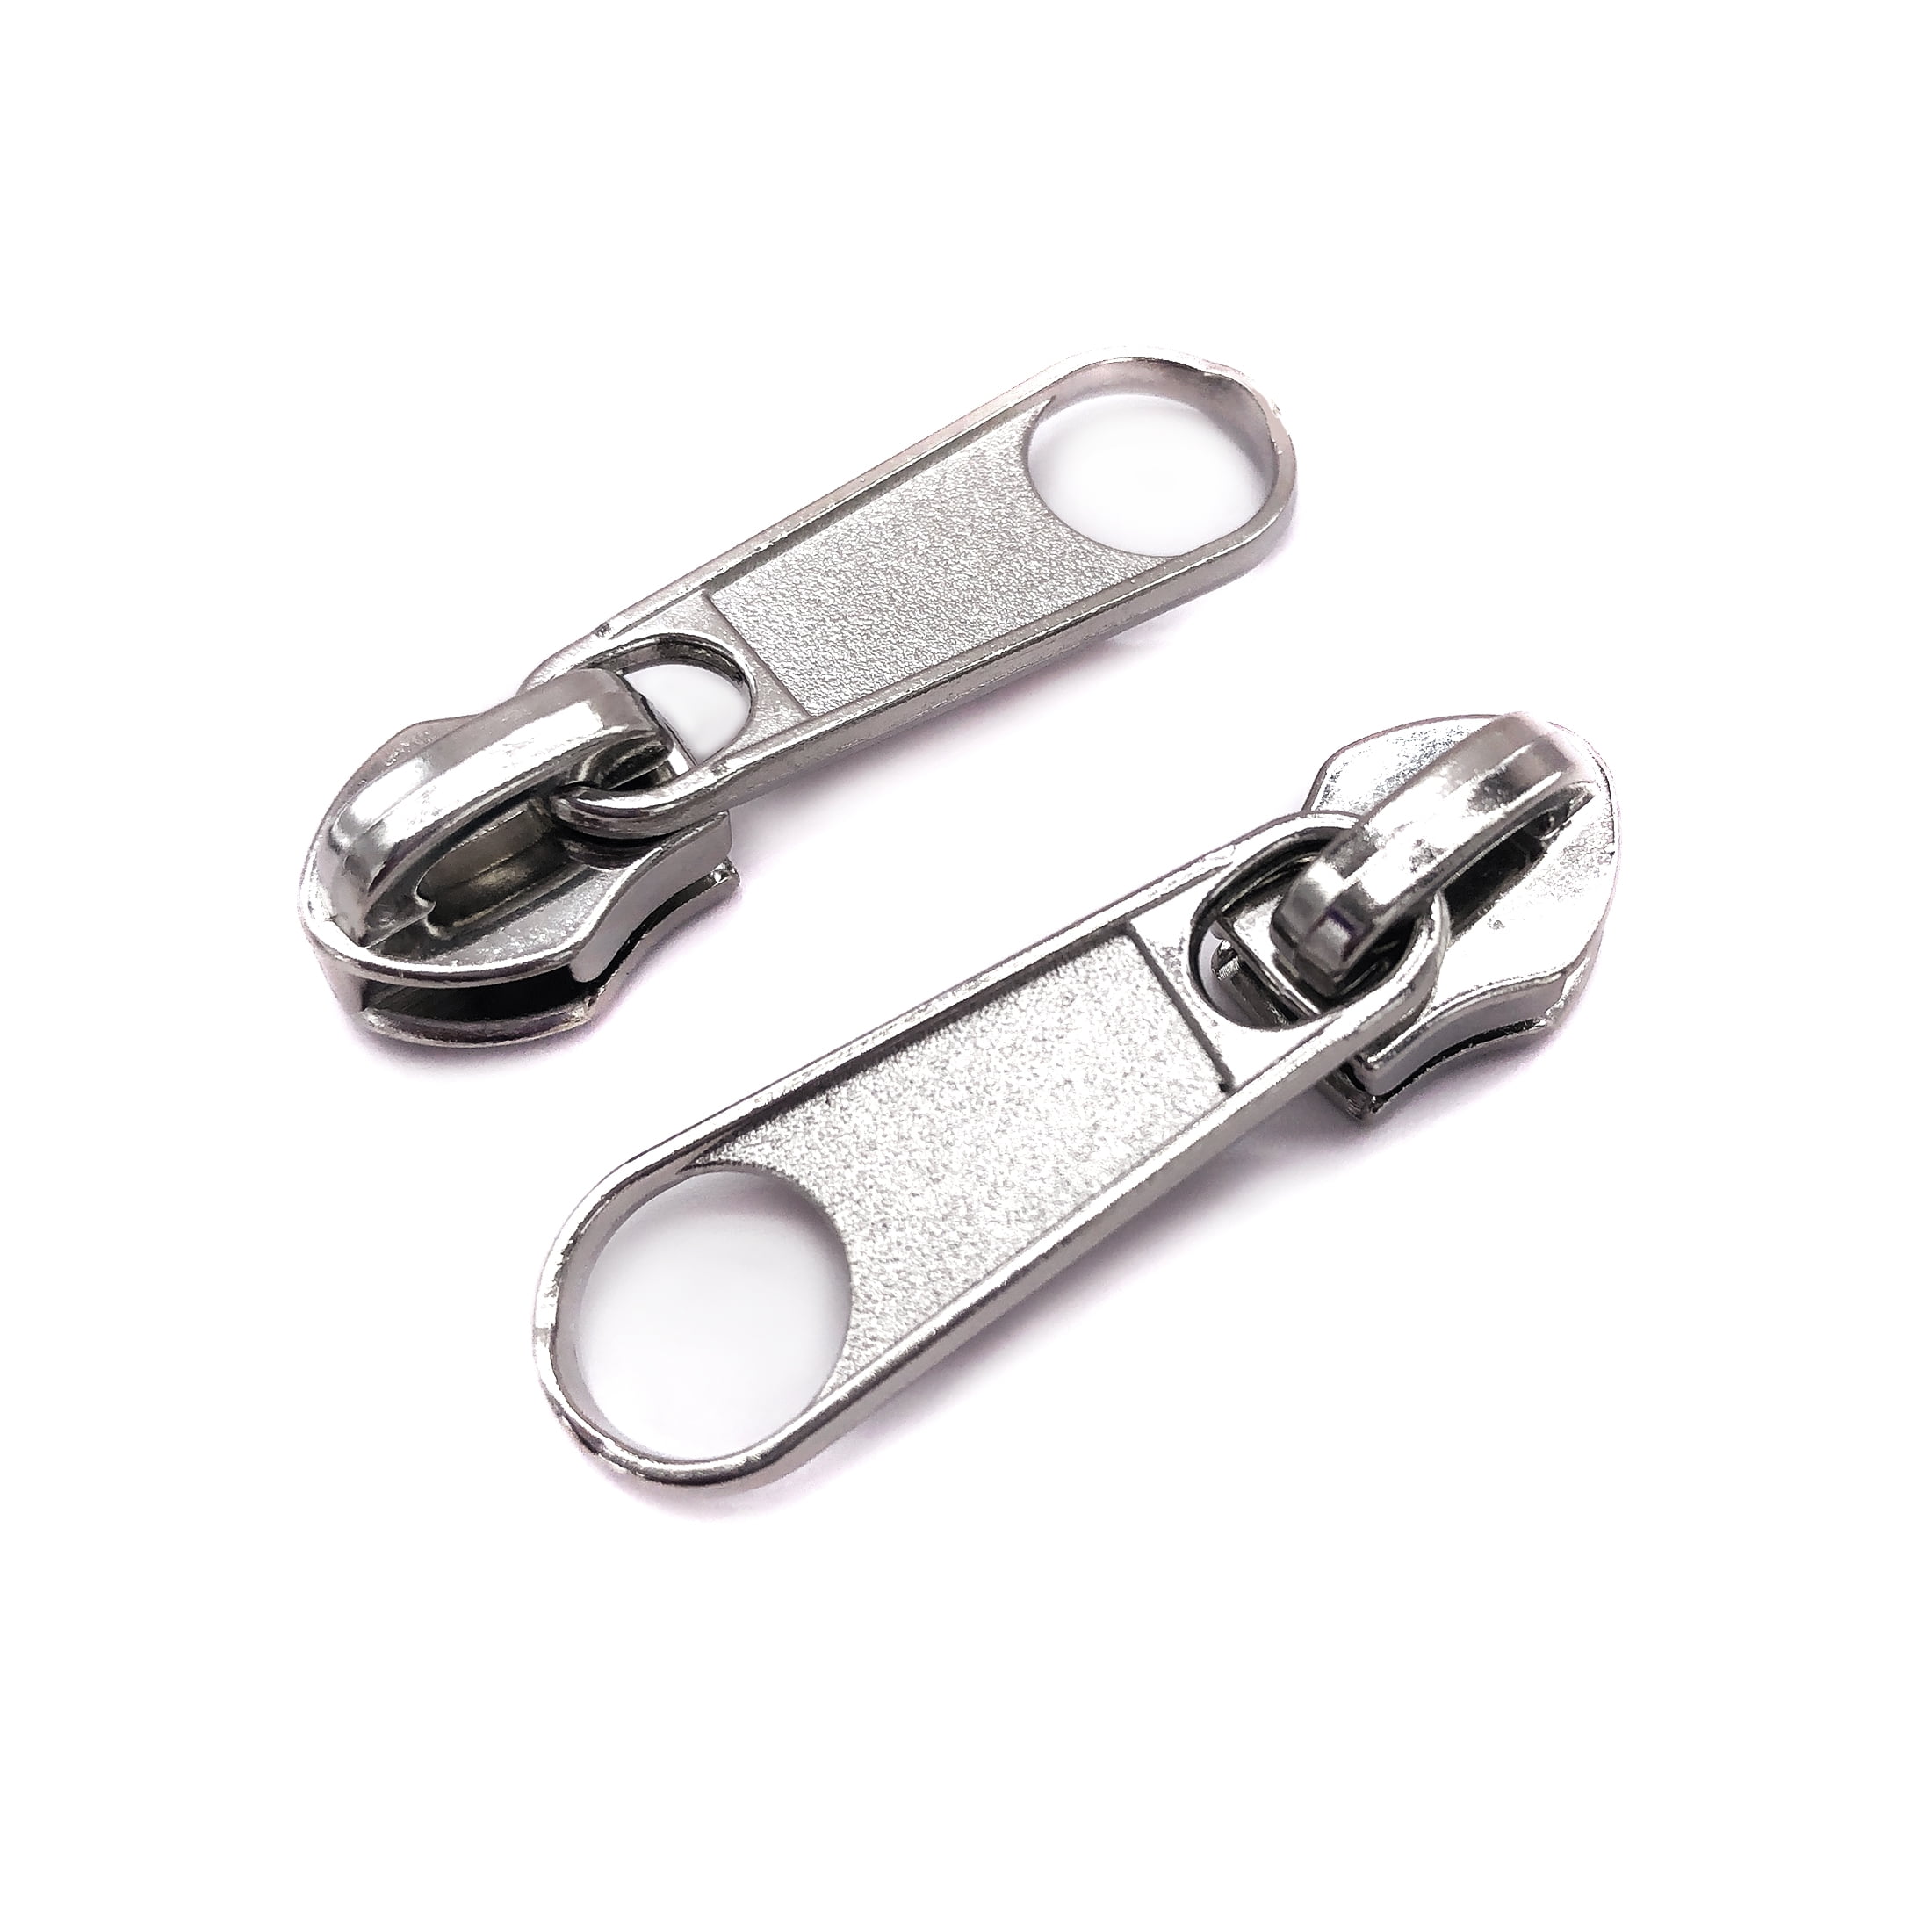 ZlideOn Metal Zipper Replacement Zipper (Metal Zipper L 5A Black)